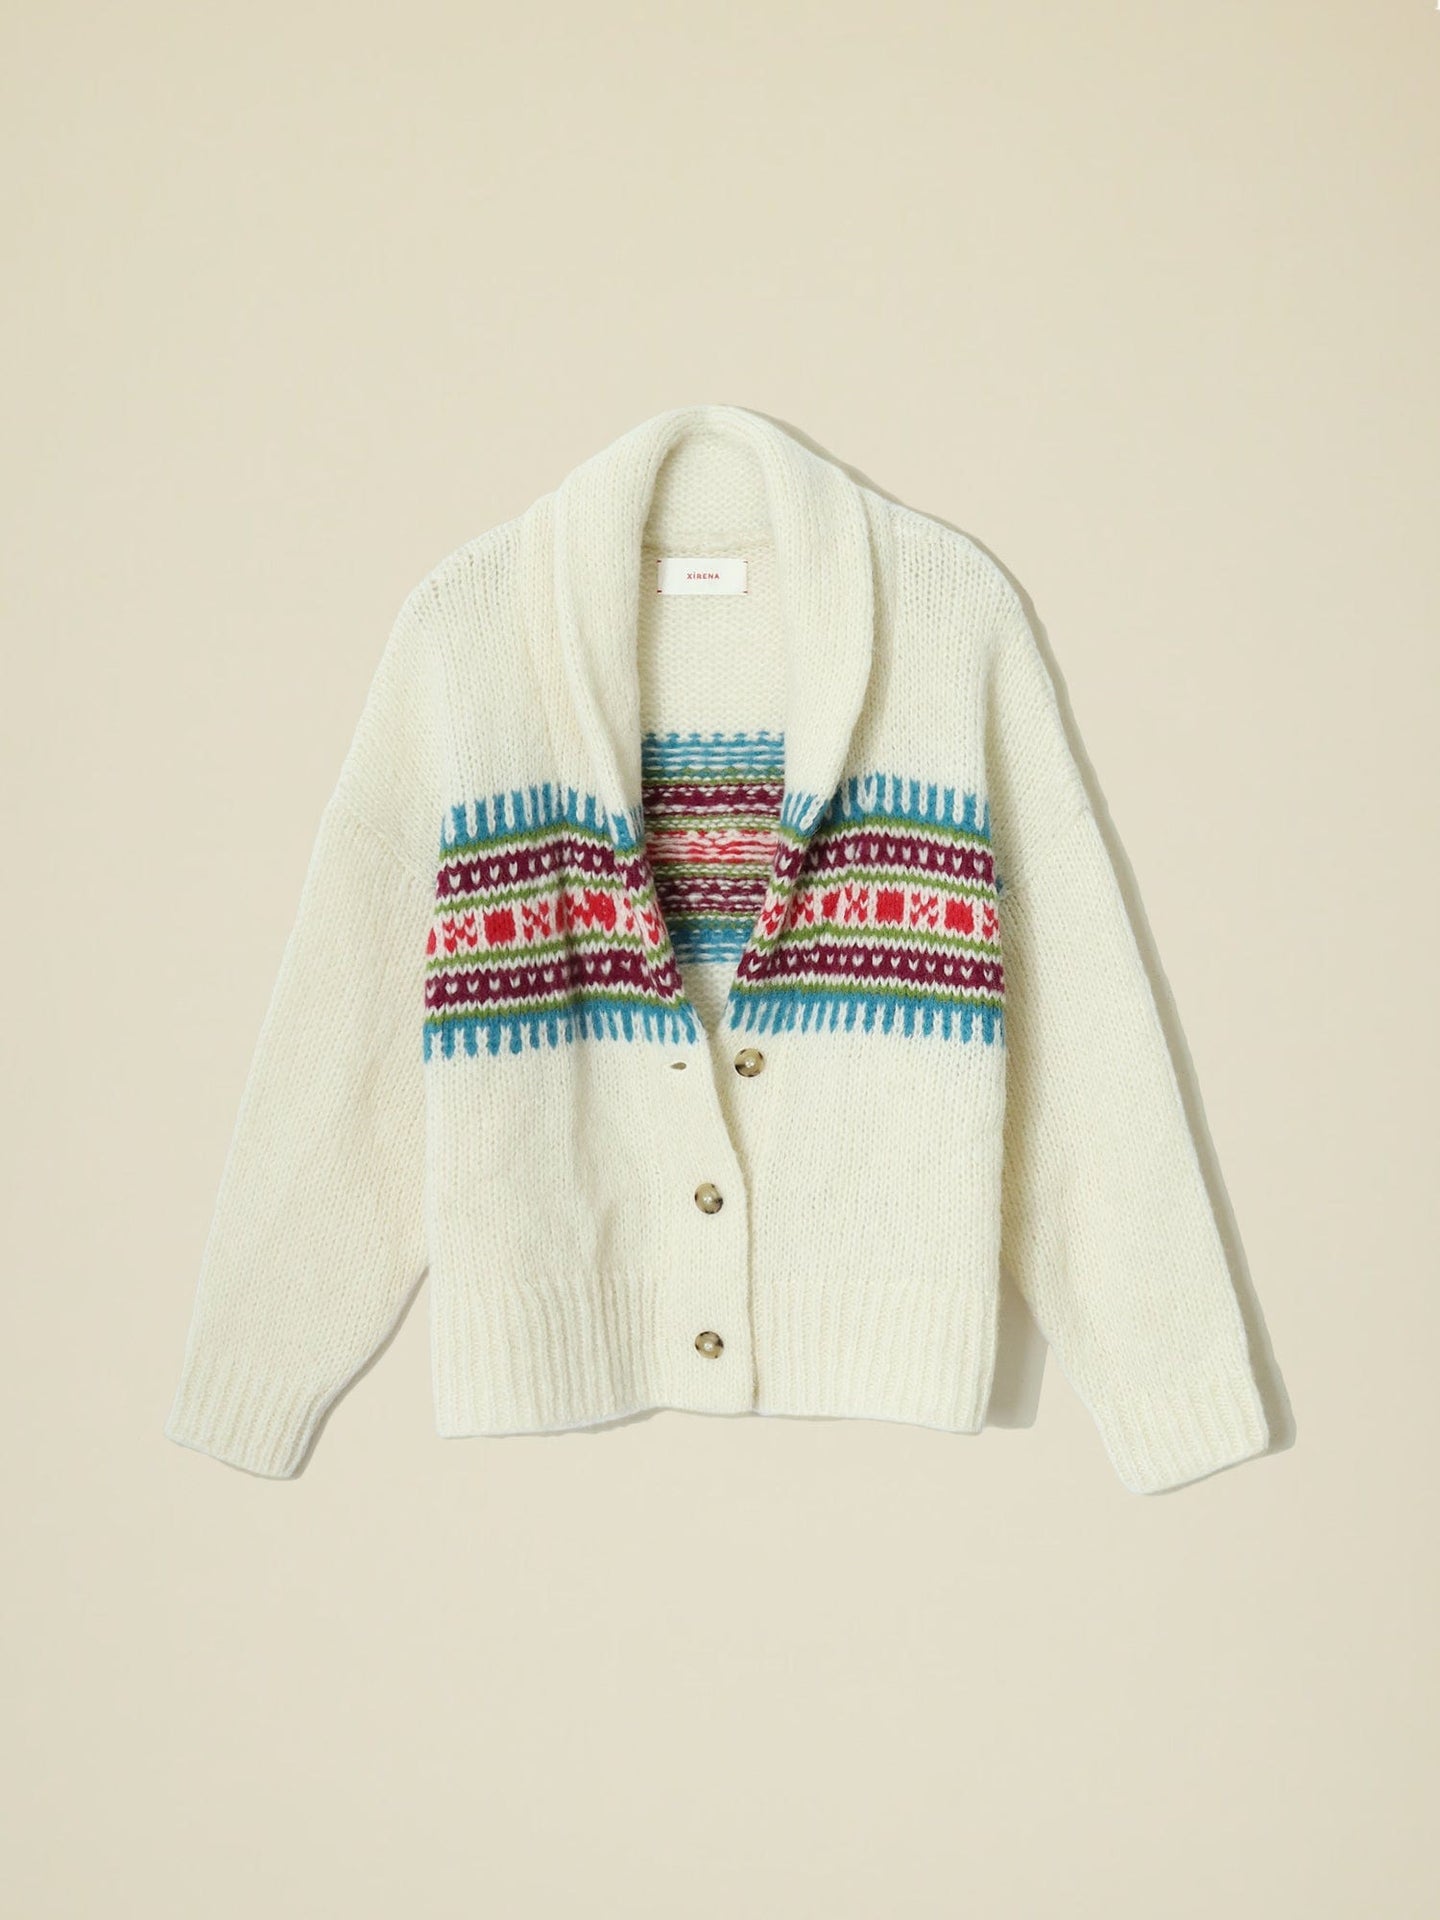 Xirena Sweater Ivory Waylon Sweater